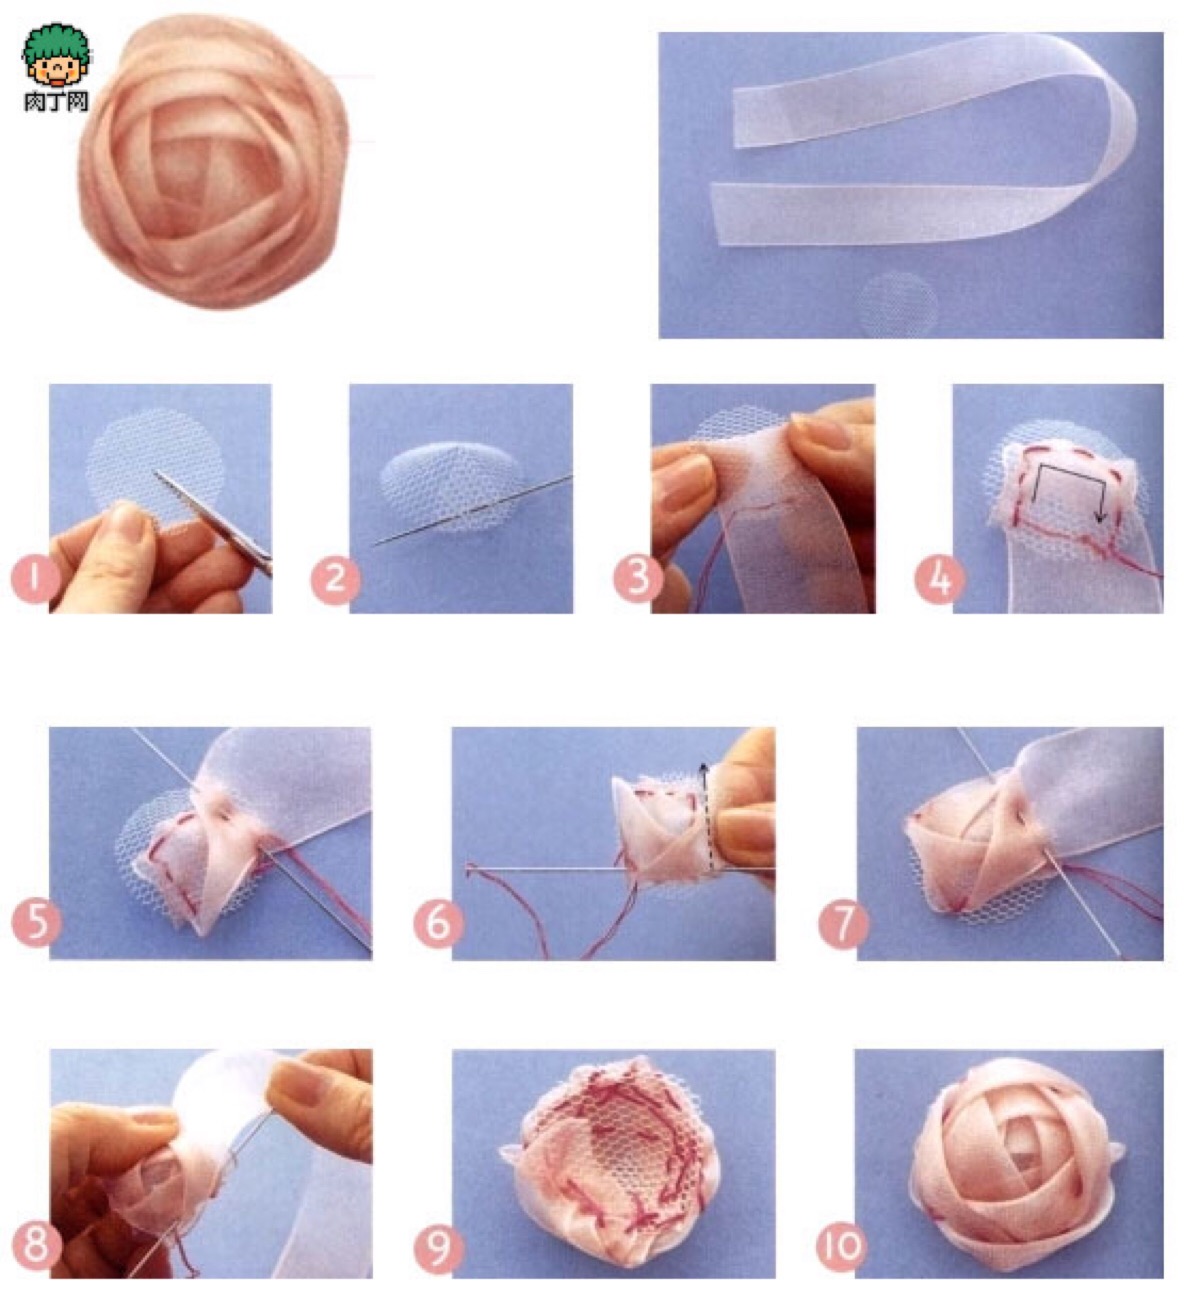 玫瑰花丝网花制作过程图片